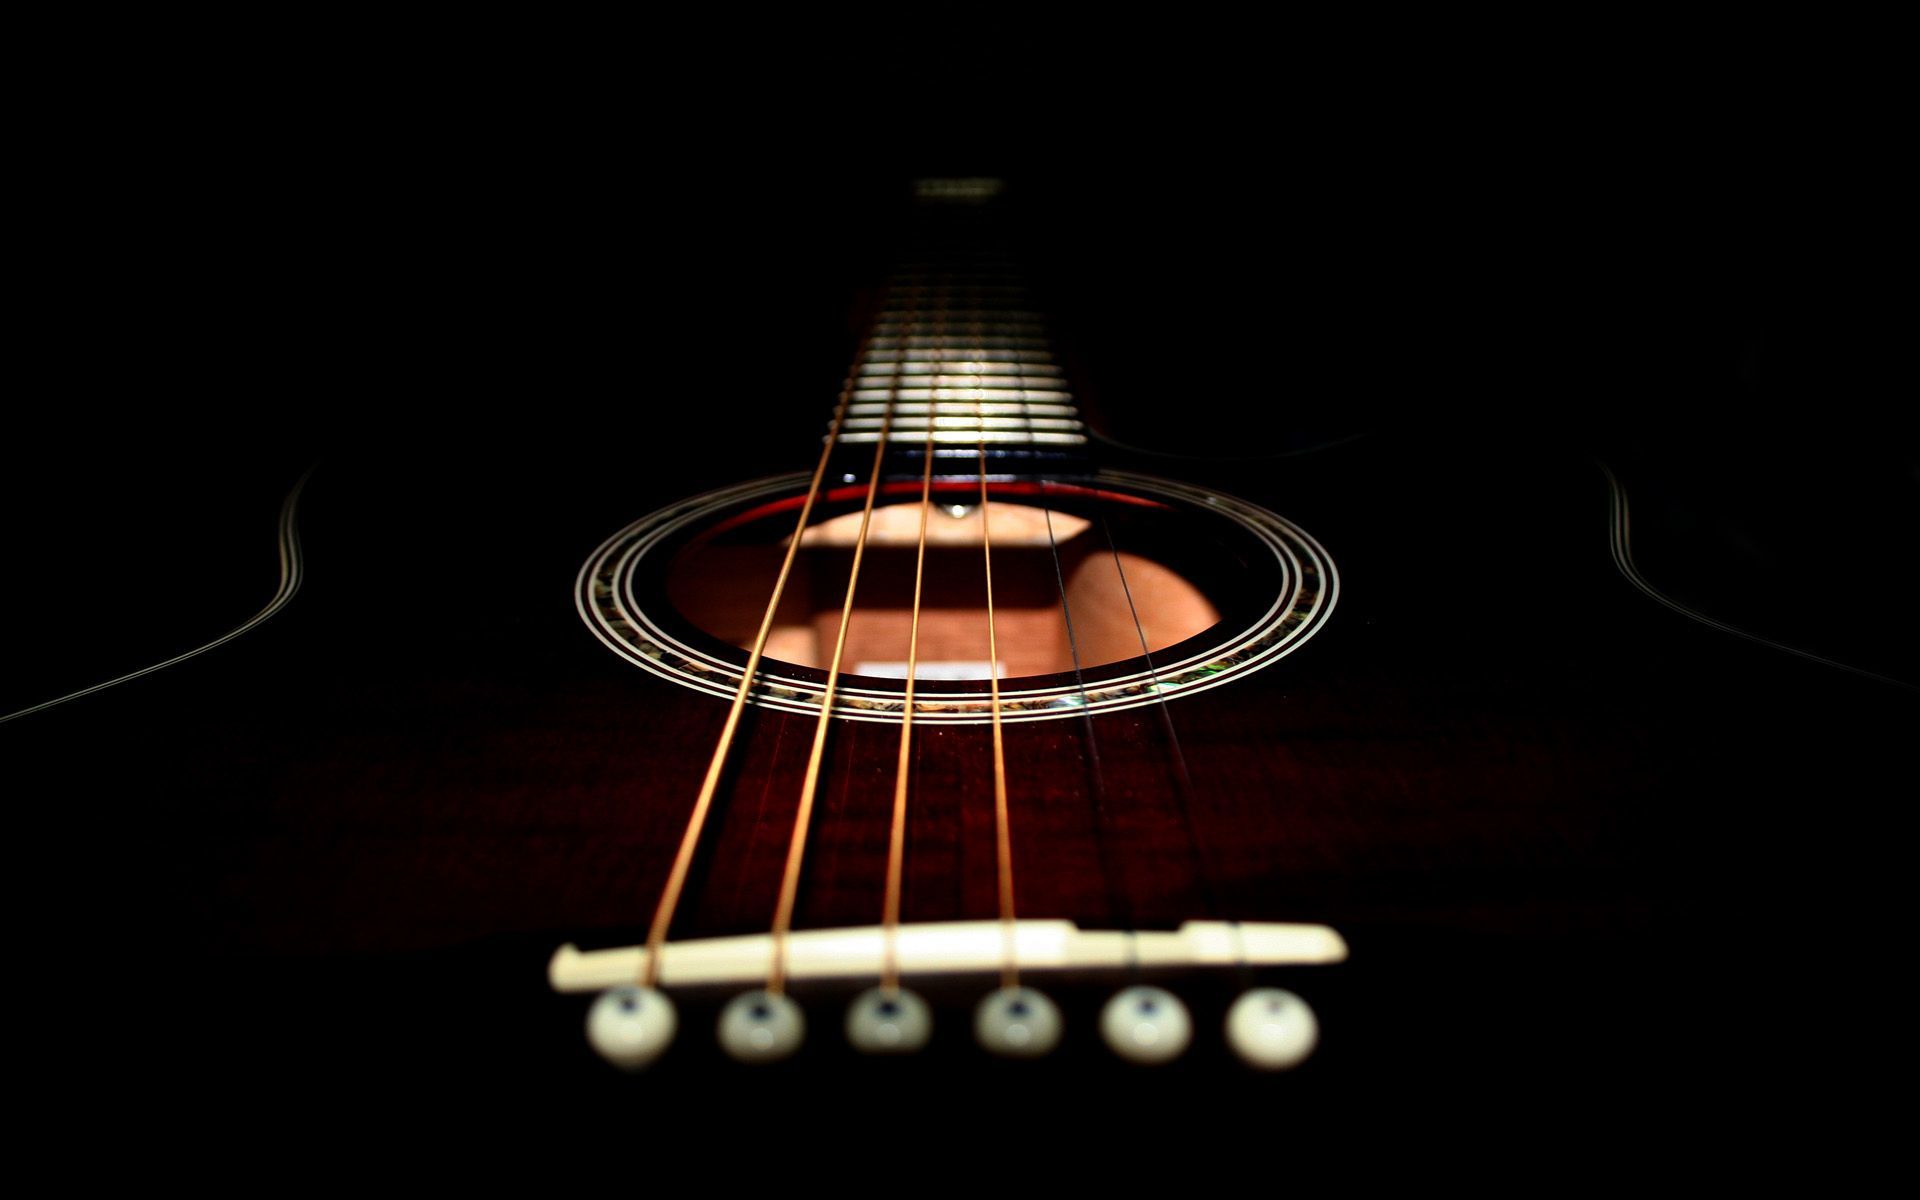 Acoustic Guitar wallpaper. Guitar, Acoustic song, Music wallpaper